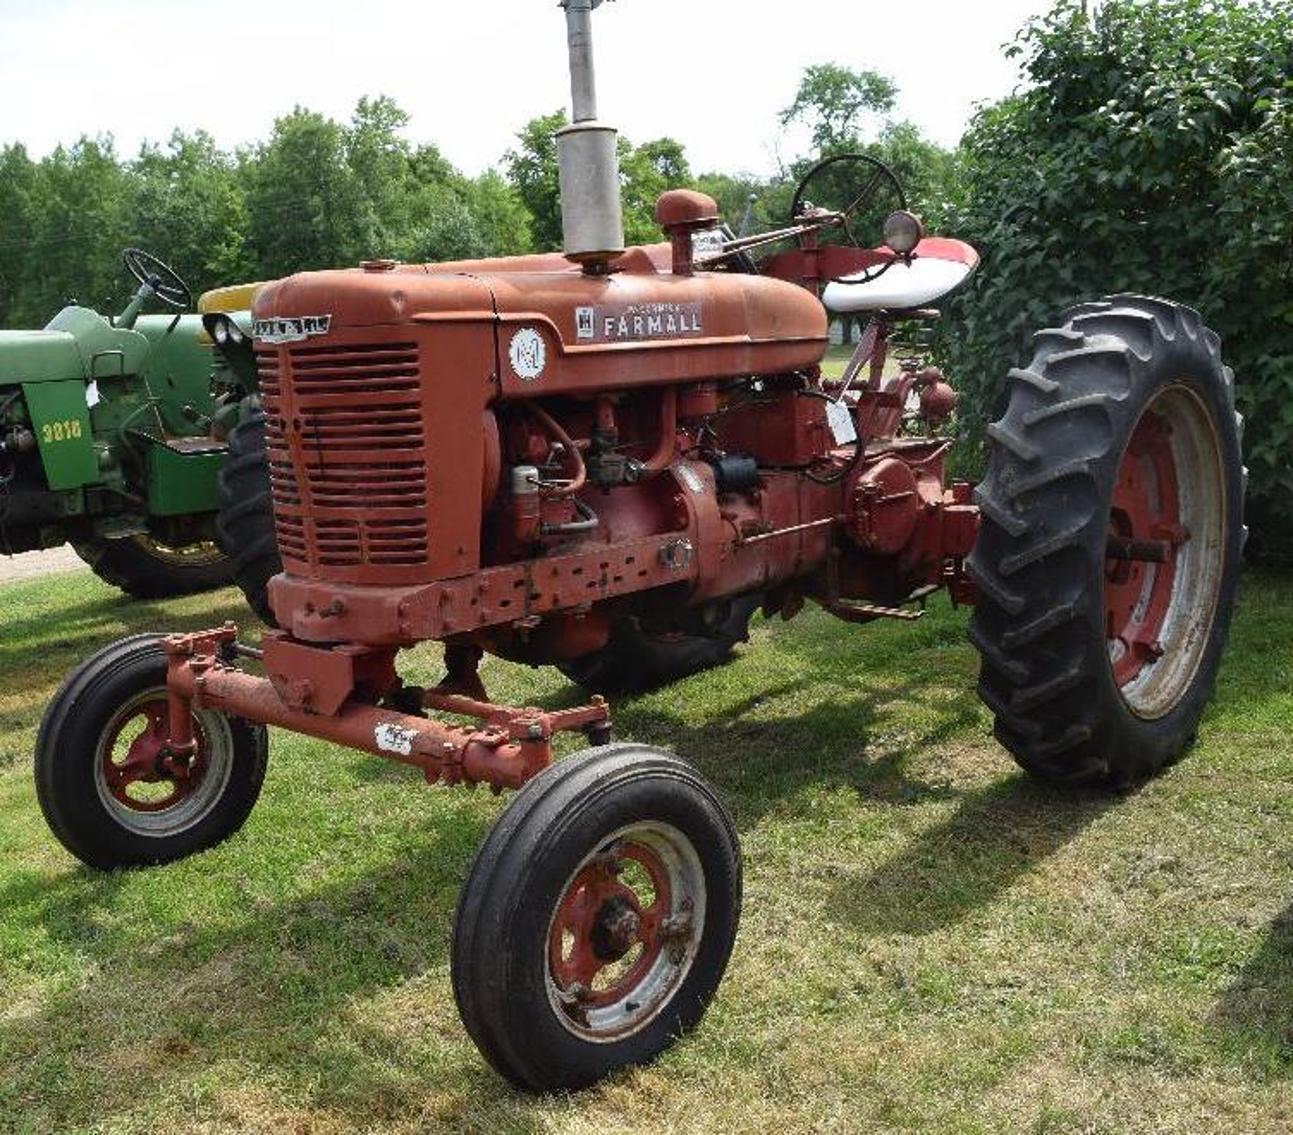 Farm Equipment - Tractors, Crawlers, Disc., Grain Hauler, Skid Steer